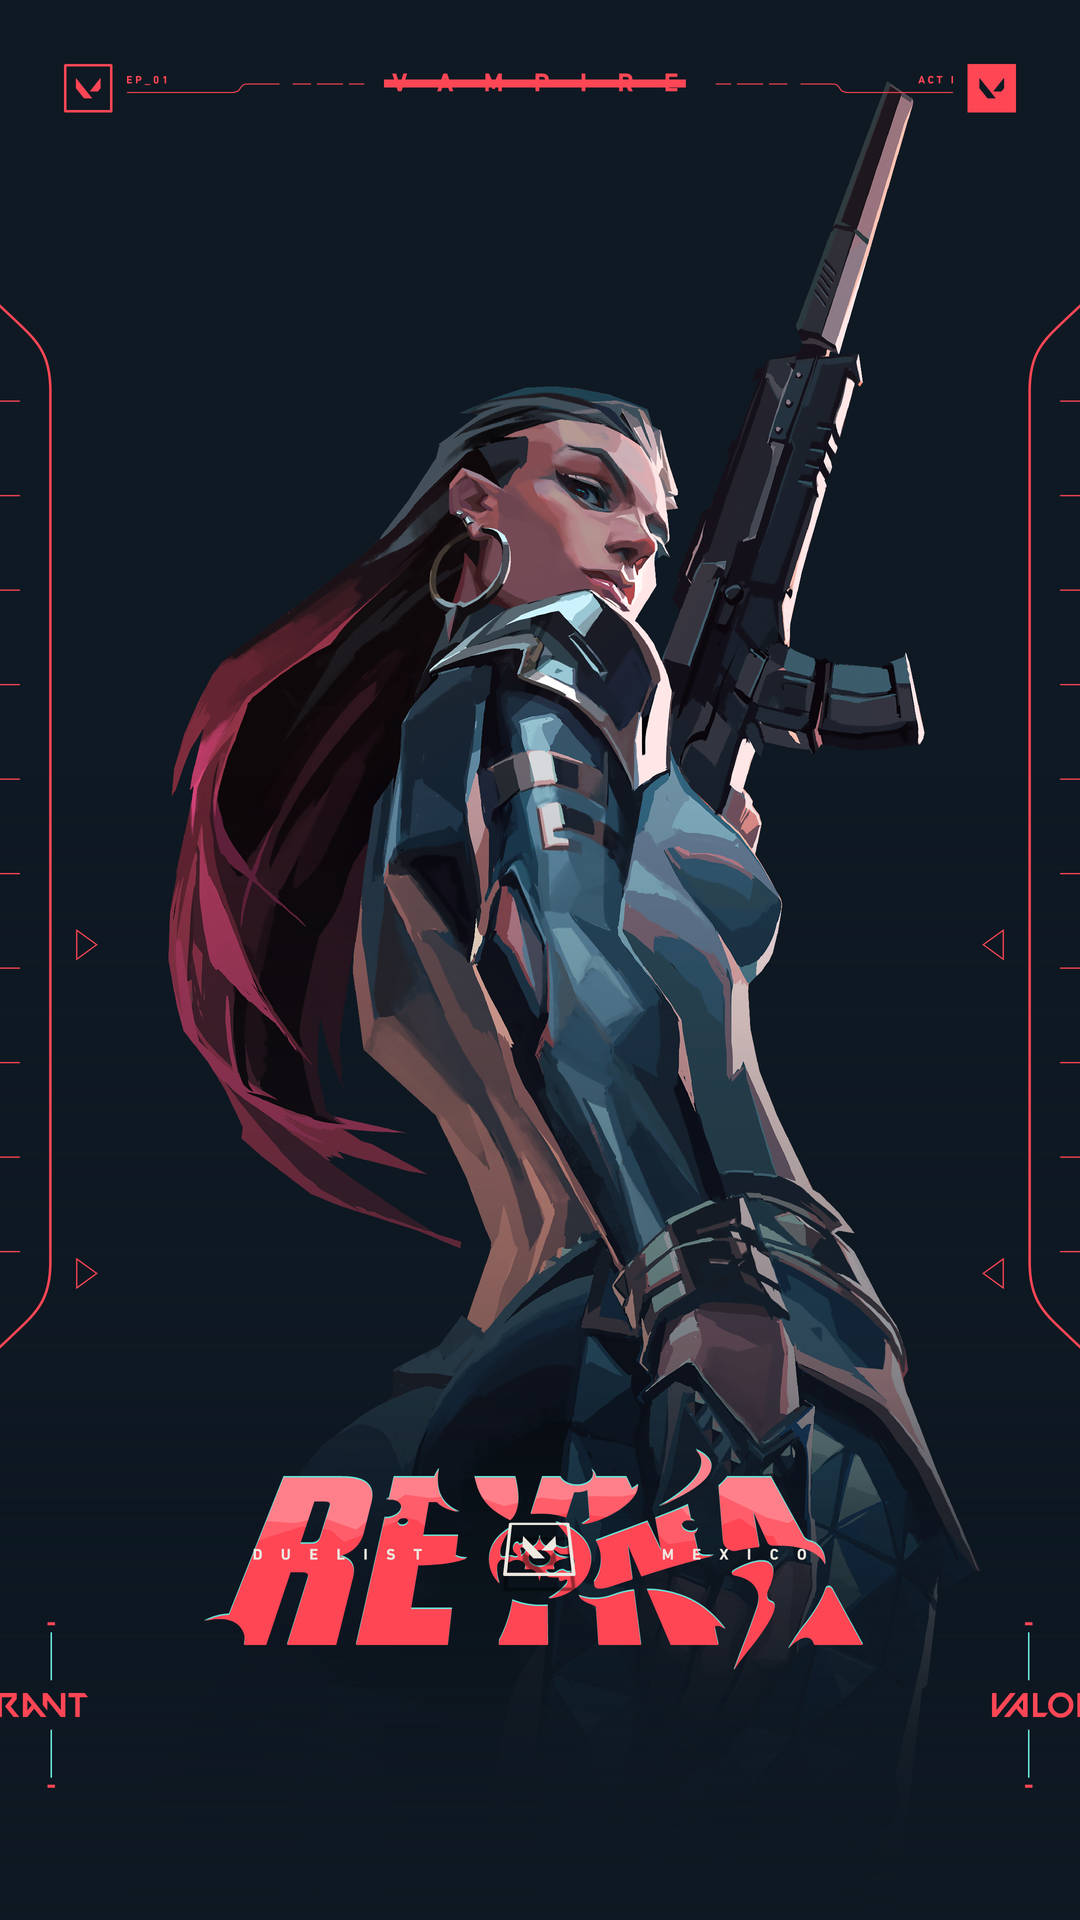 Rexa - A Female Character Holding A Gun Wallpaper